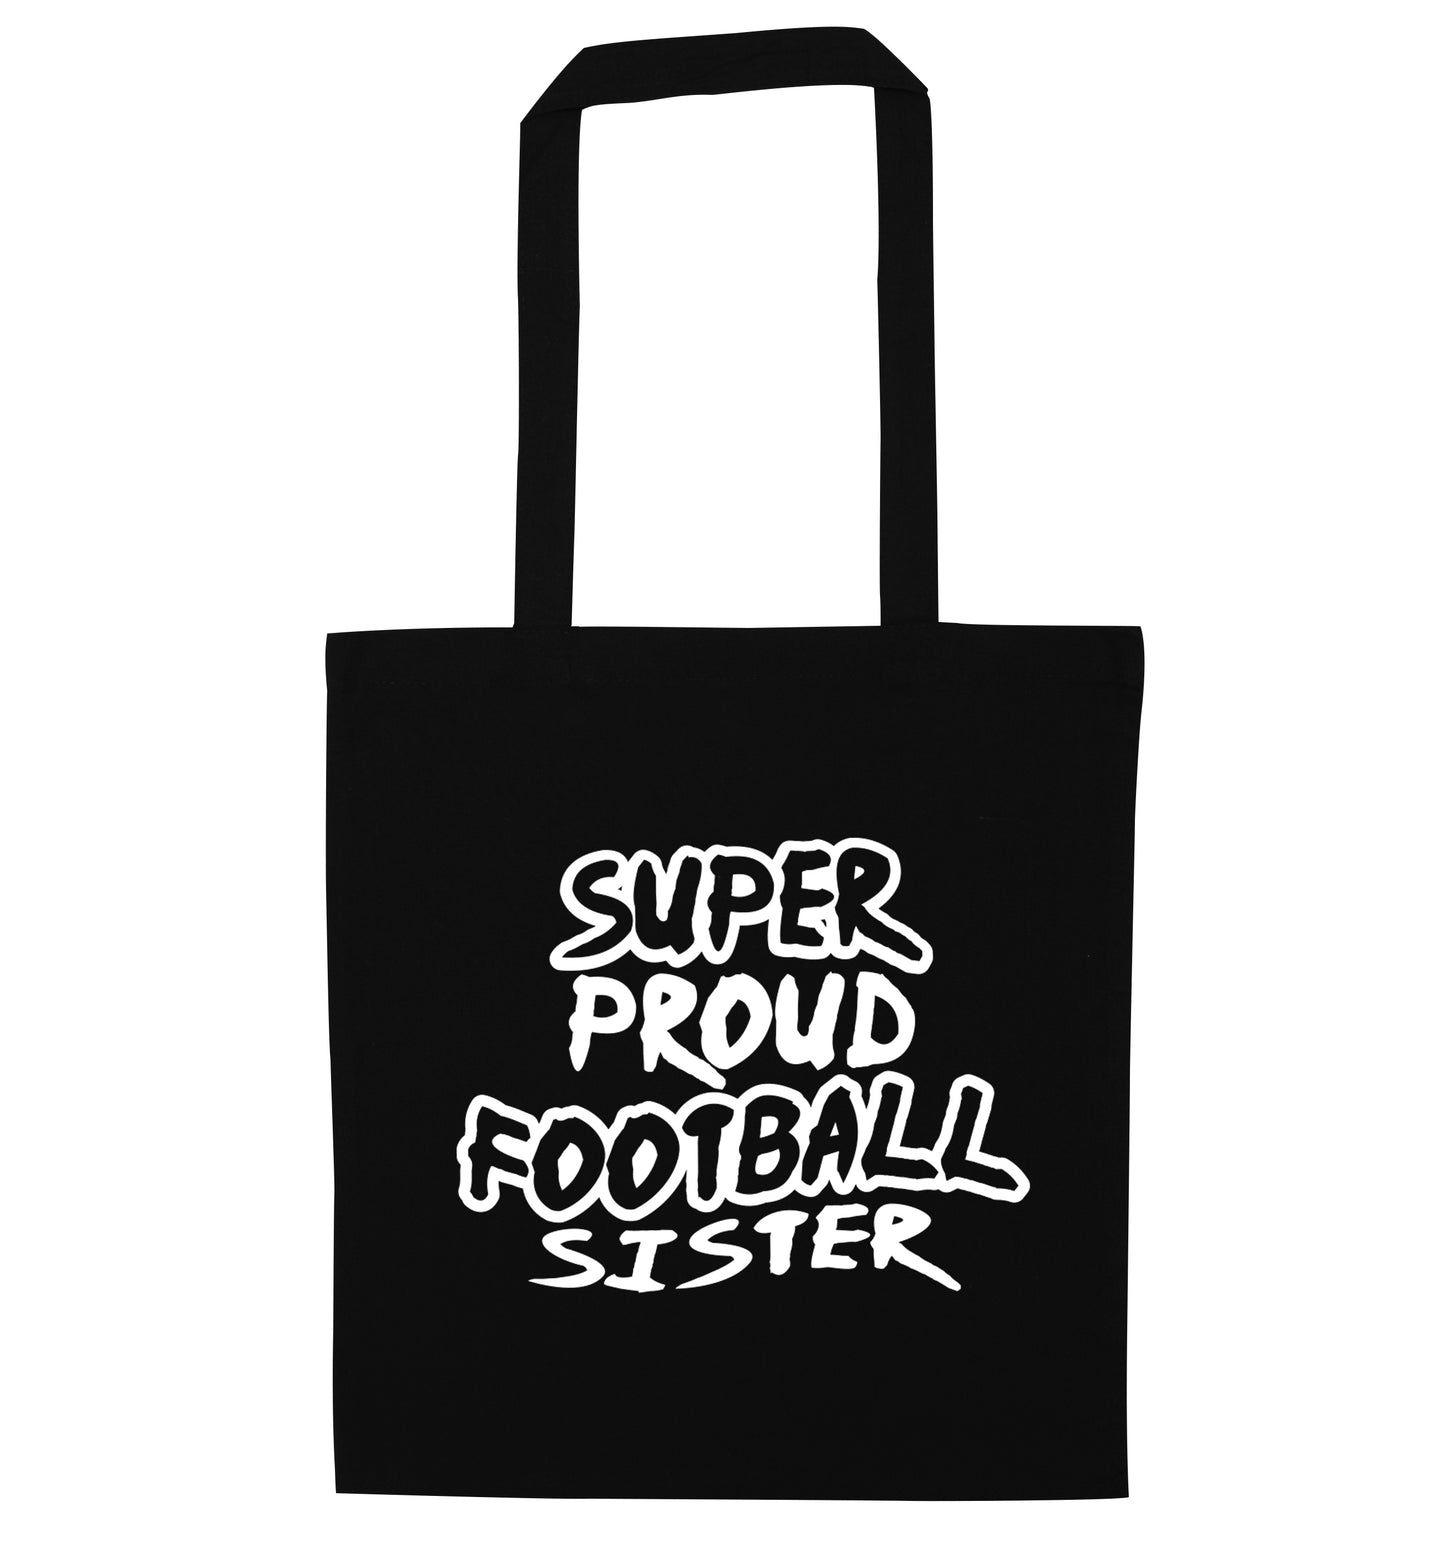 Super proud football sister black tote bag